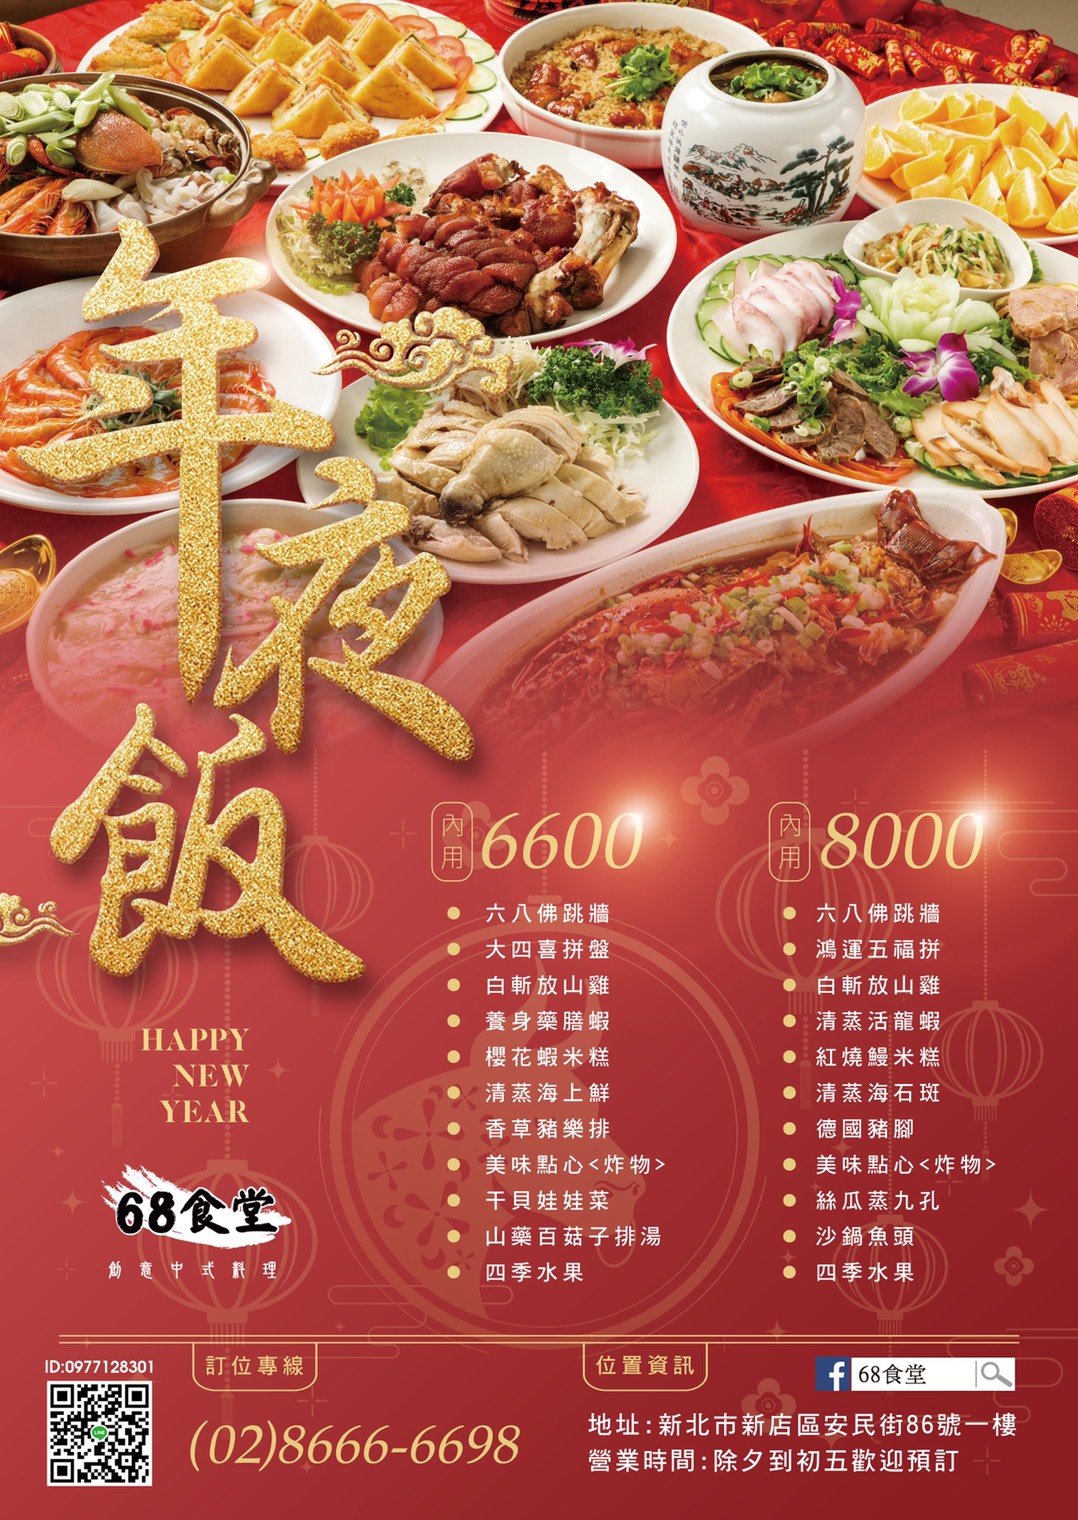 台北年菜宅配年菜推薦》68食堂，澎派好吃的料理，重要節日就該把時間留給家人，外燴服務